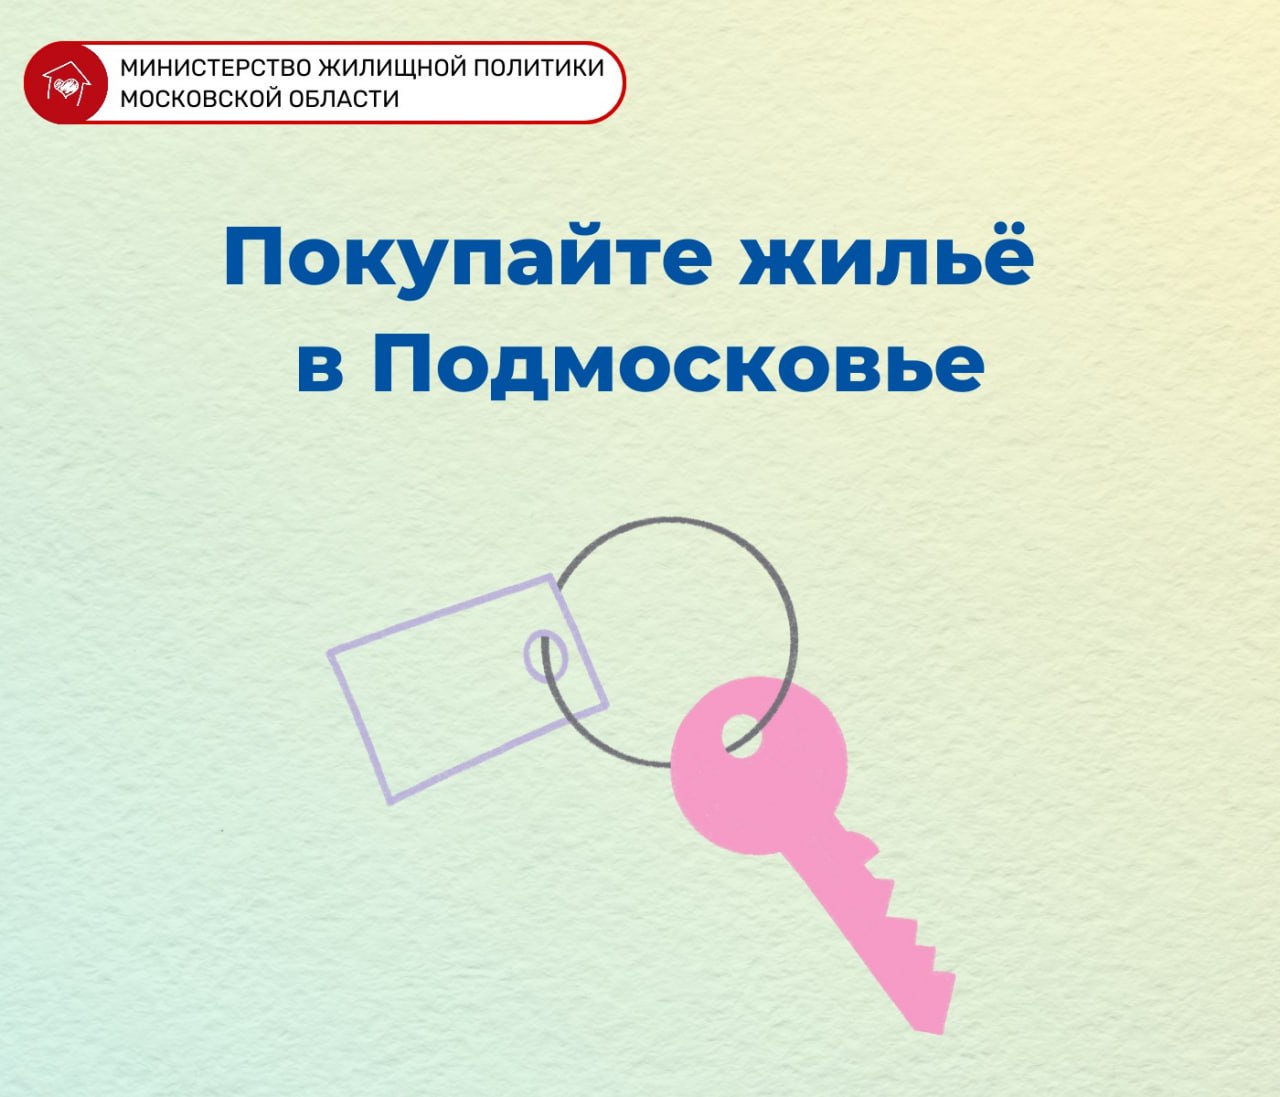 Пошаговая инструкция о подготовке к покупке недвижимости в карточках Министерства жилищной политики Московской области